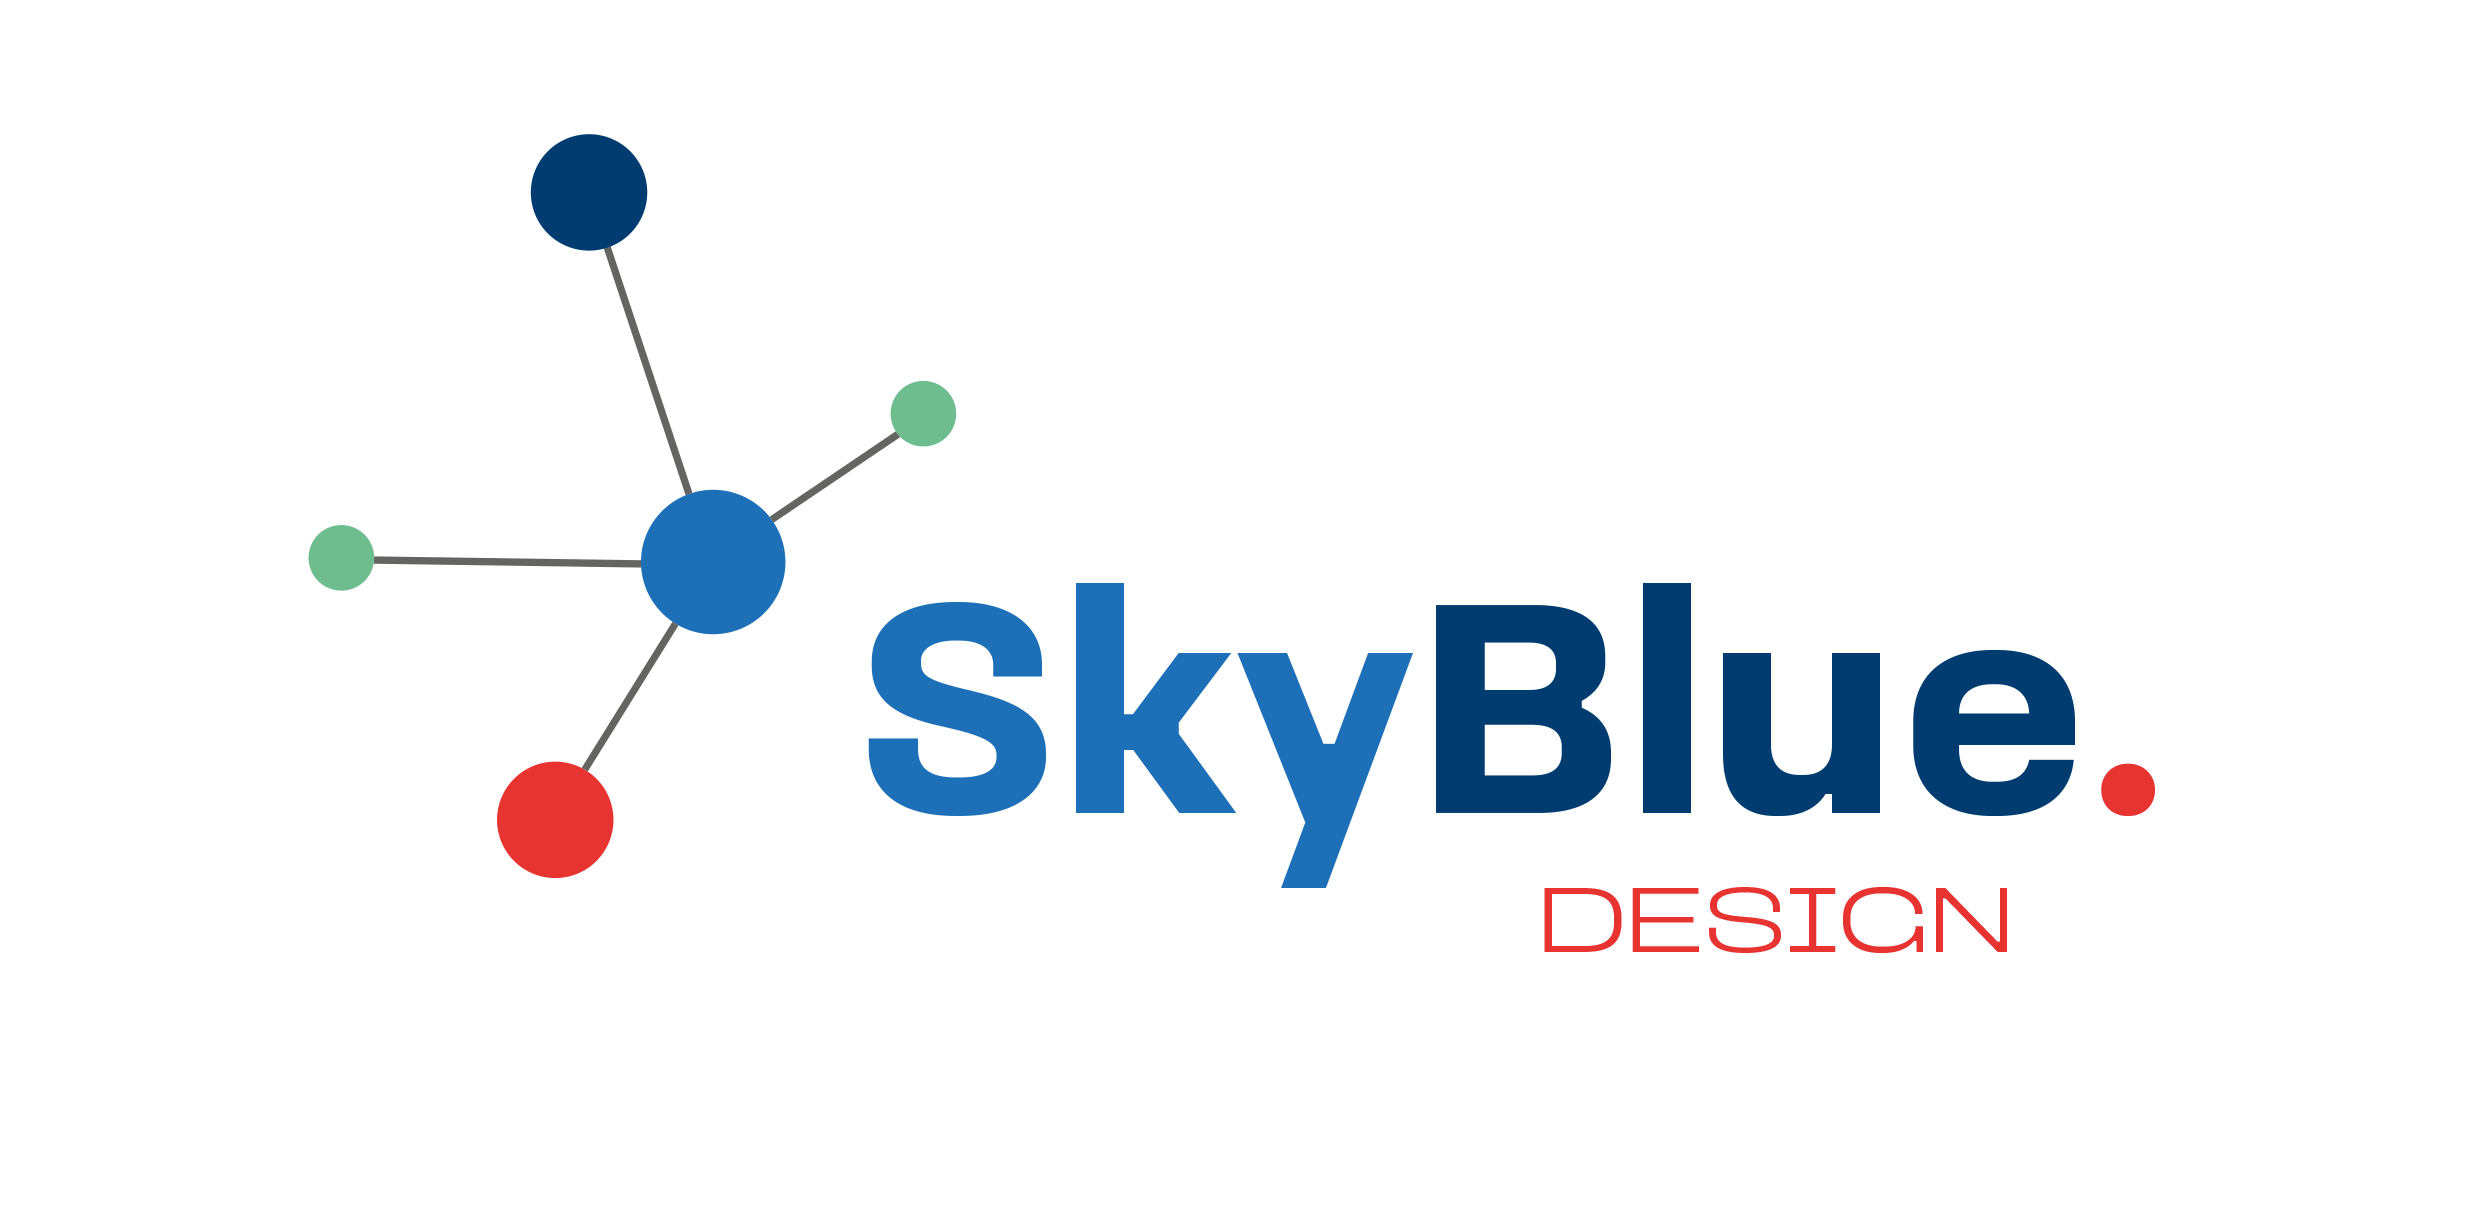 Sky_Blue_Design_logo